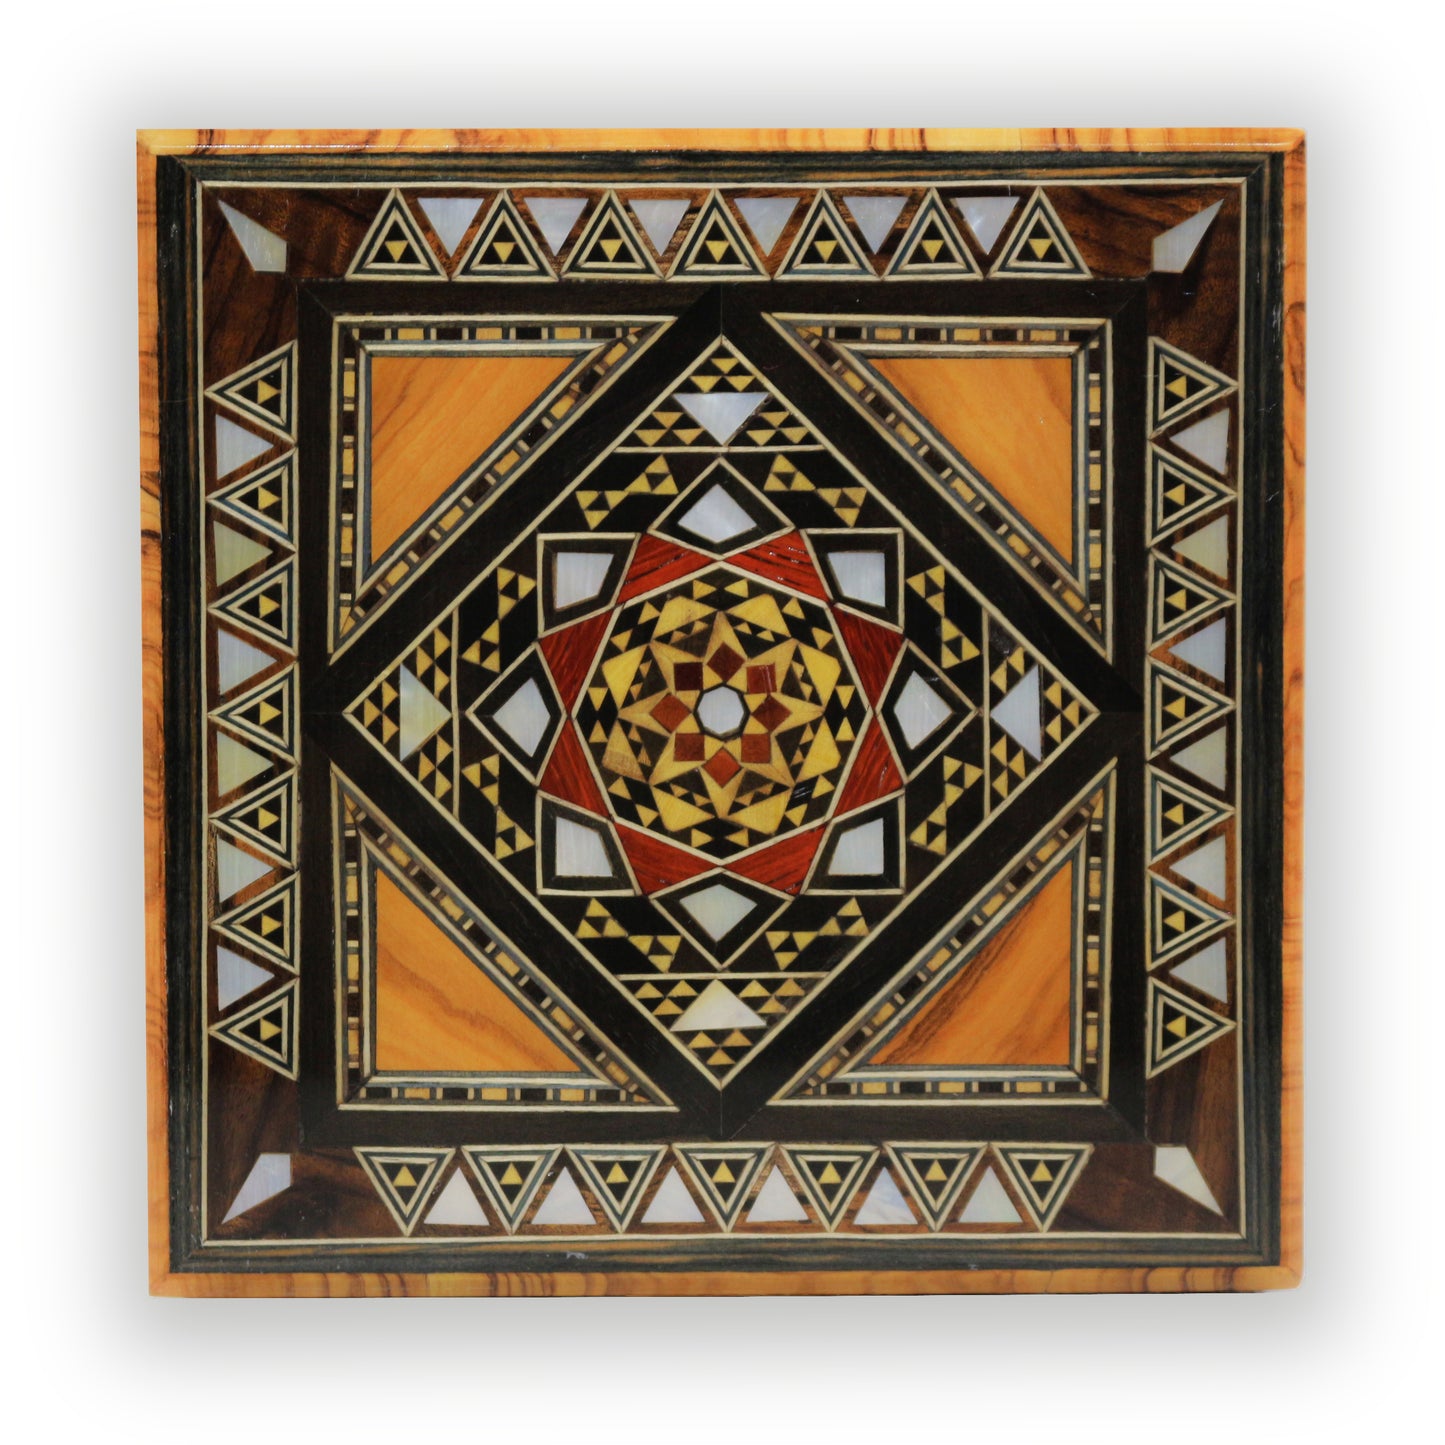 Neu Holz Mosaik Schatulle,Box,Kästchen, Damaskunst K 1-9-43 - Damaskunst - [variant_title]-[option1]